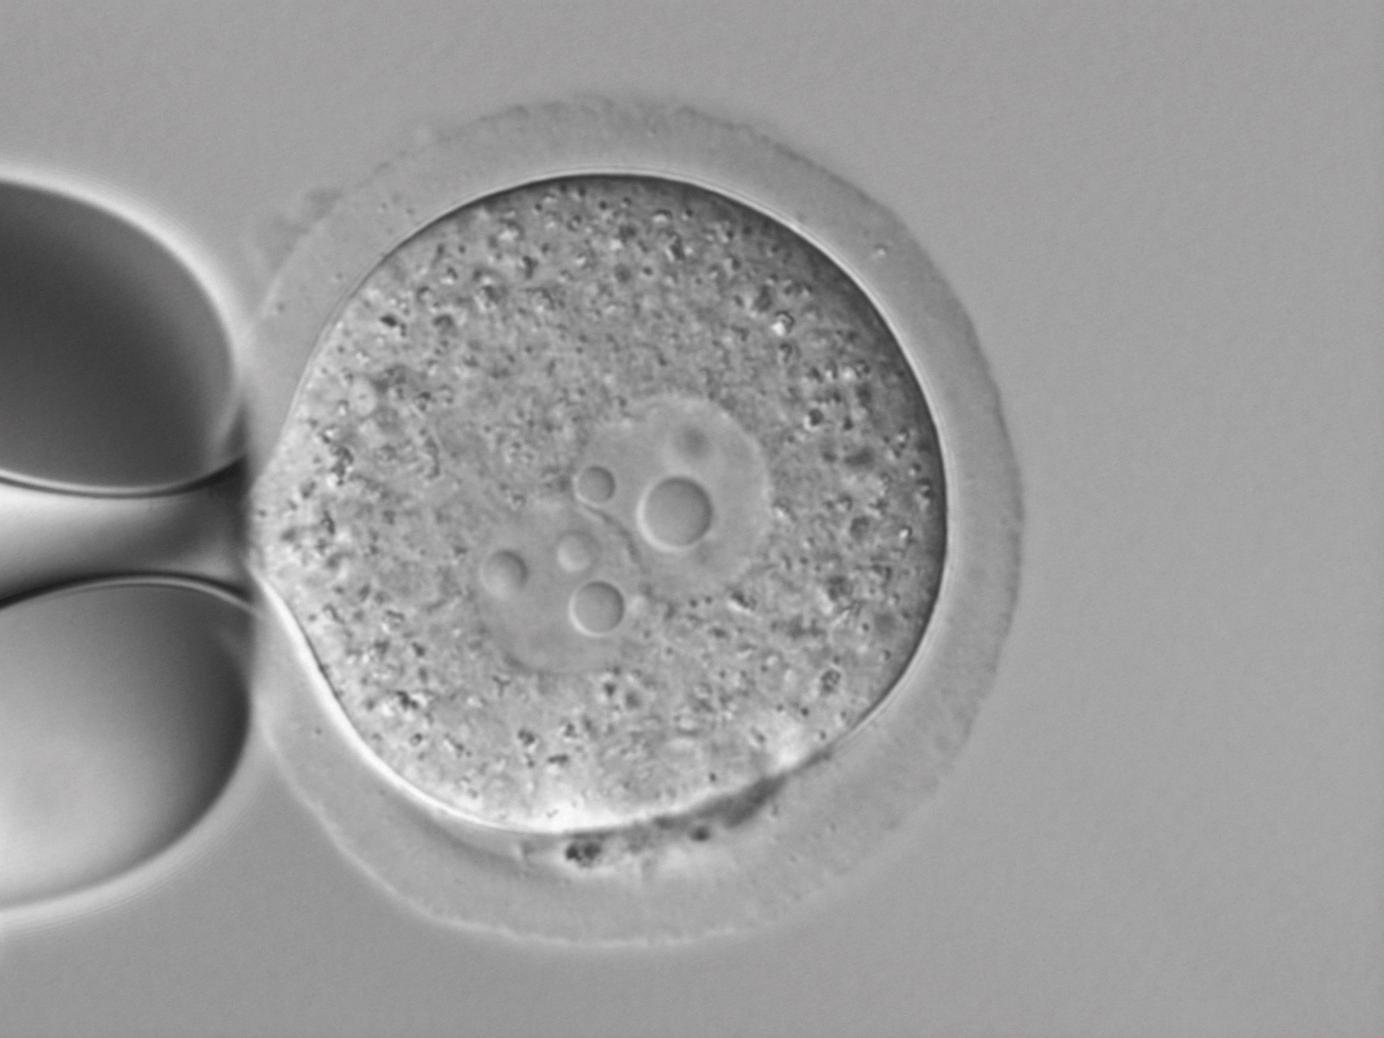 Embryos einer transgenen Maus, DIC; mit freundlicher Genehmigung von Dr. L.-M. Criado Rodríguez, Abteilung Transgenese, Fundación Centro Nacional de Investigaciones Cardiovasculares Carlos III, Madrid, Spanien